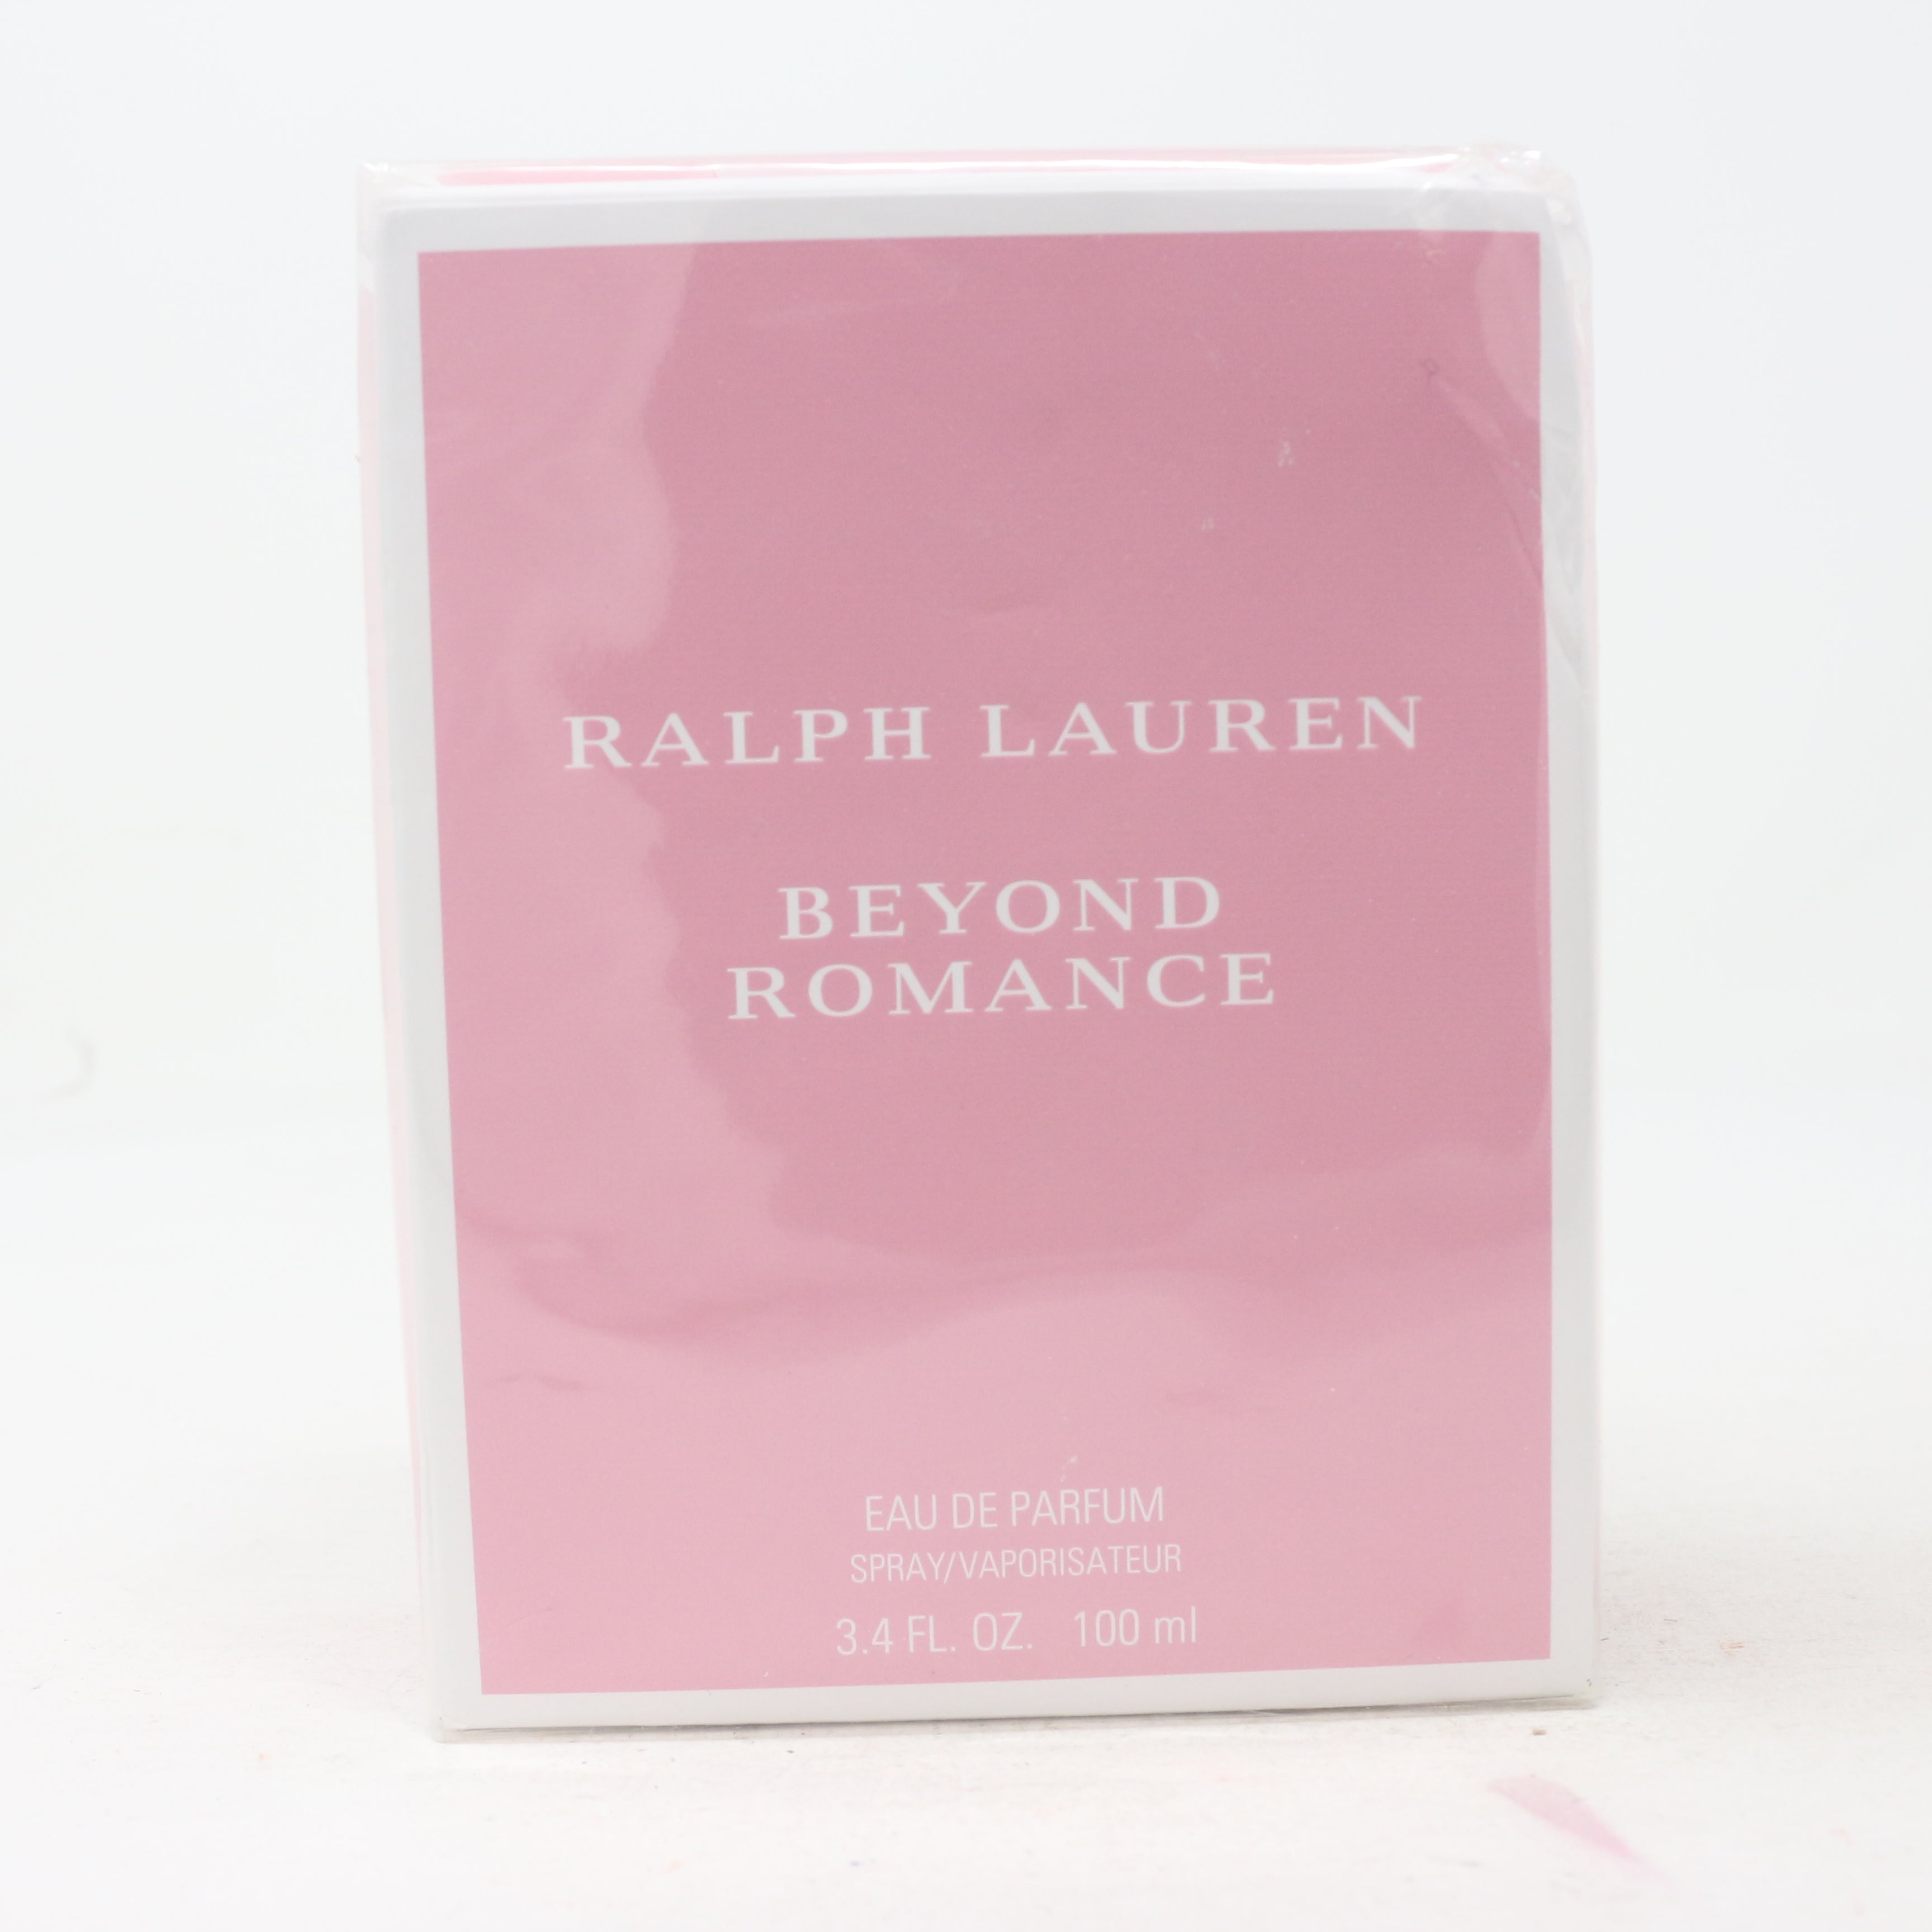 Beyond Romance by Ralph Lauren Eau de Parfum Spray 1 oz (women)